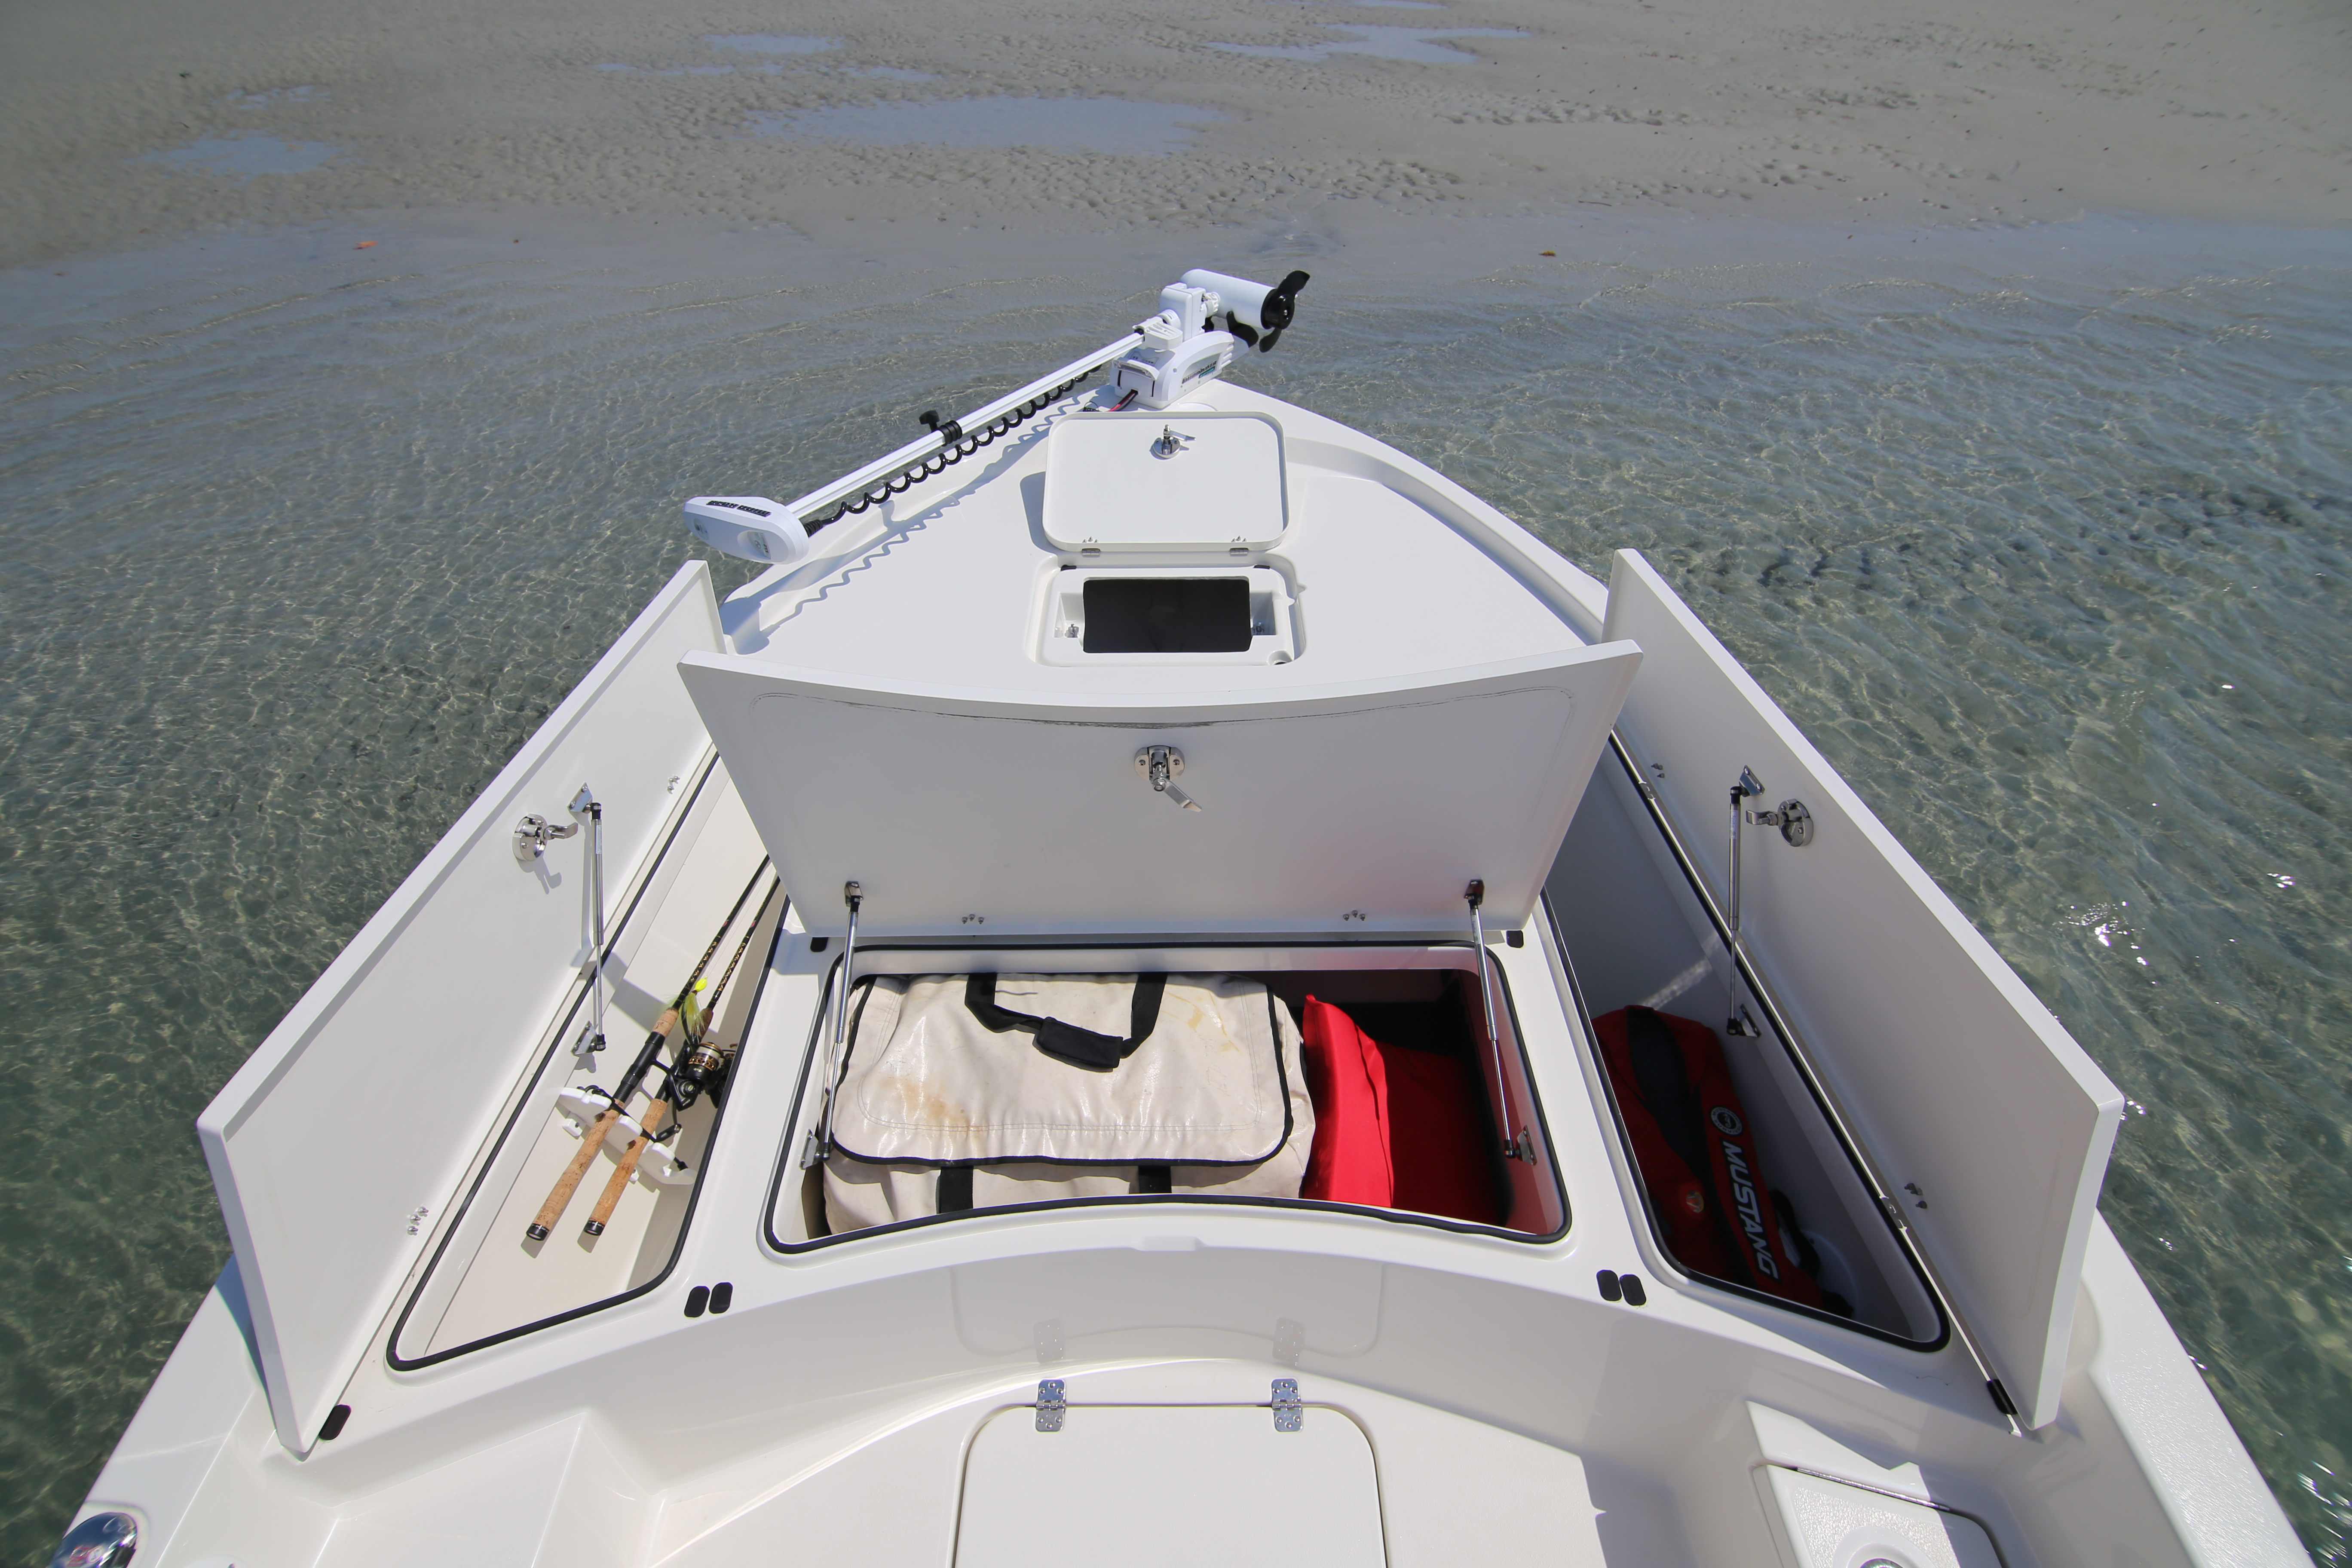 Boat Review - Triton 240 LTS - Florida Sportsman